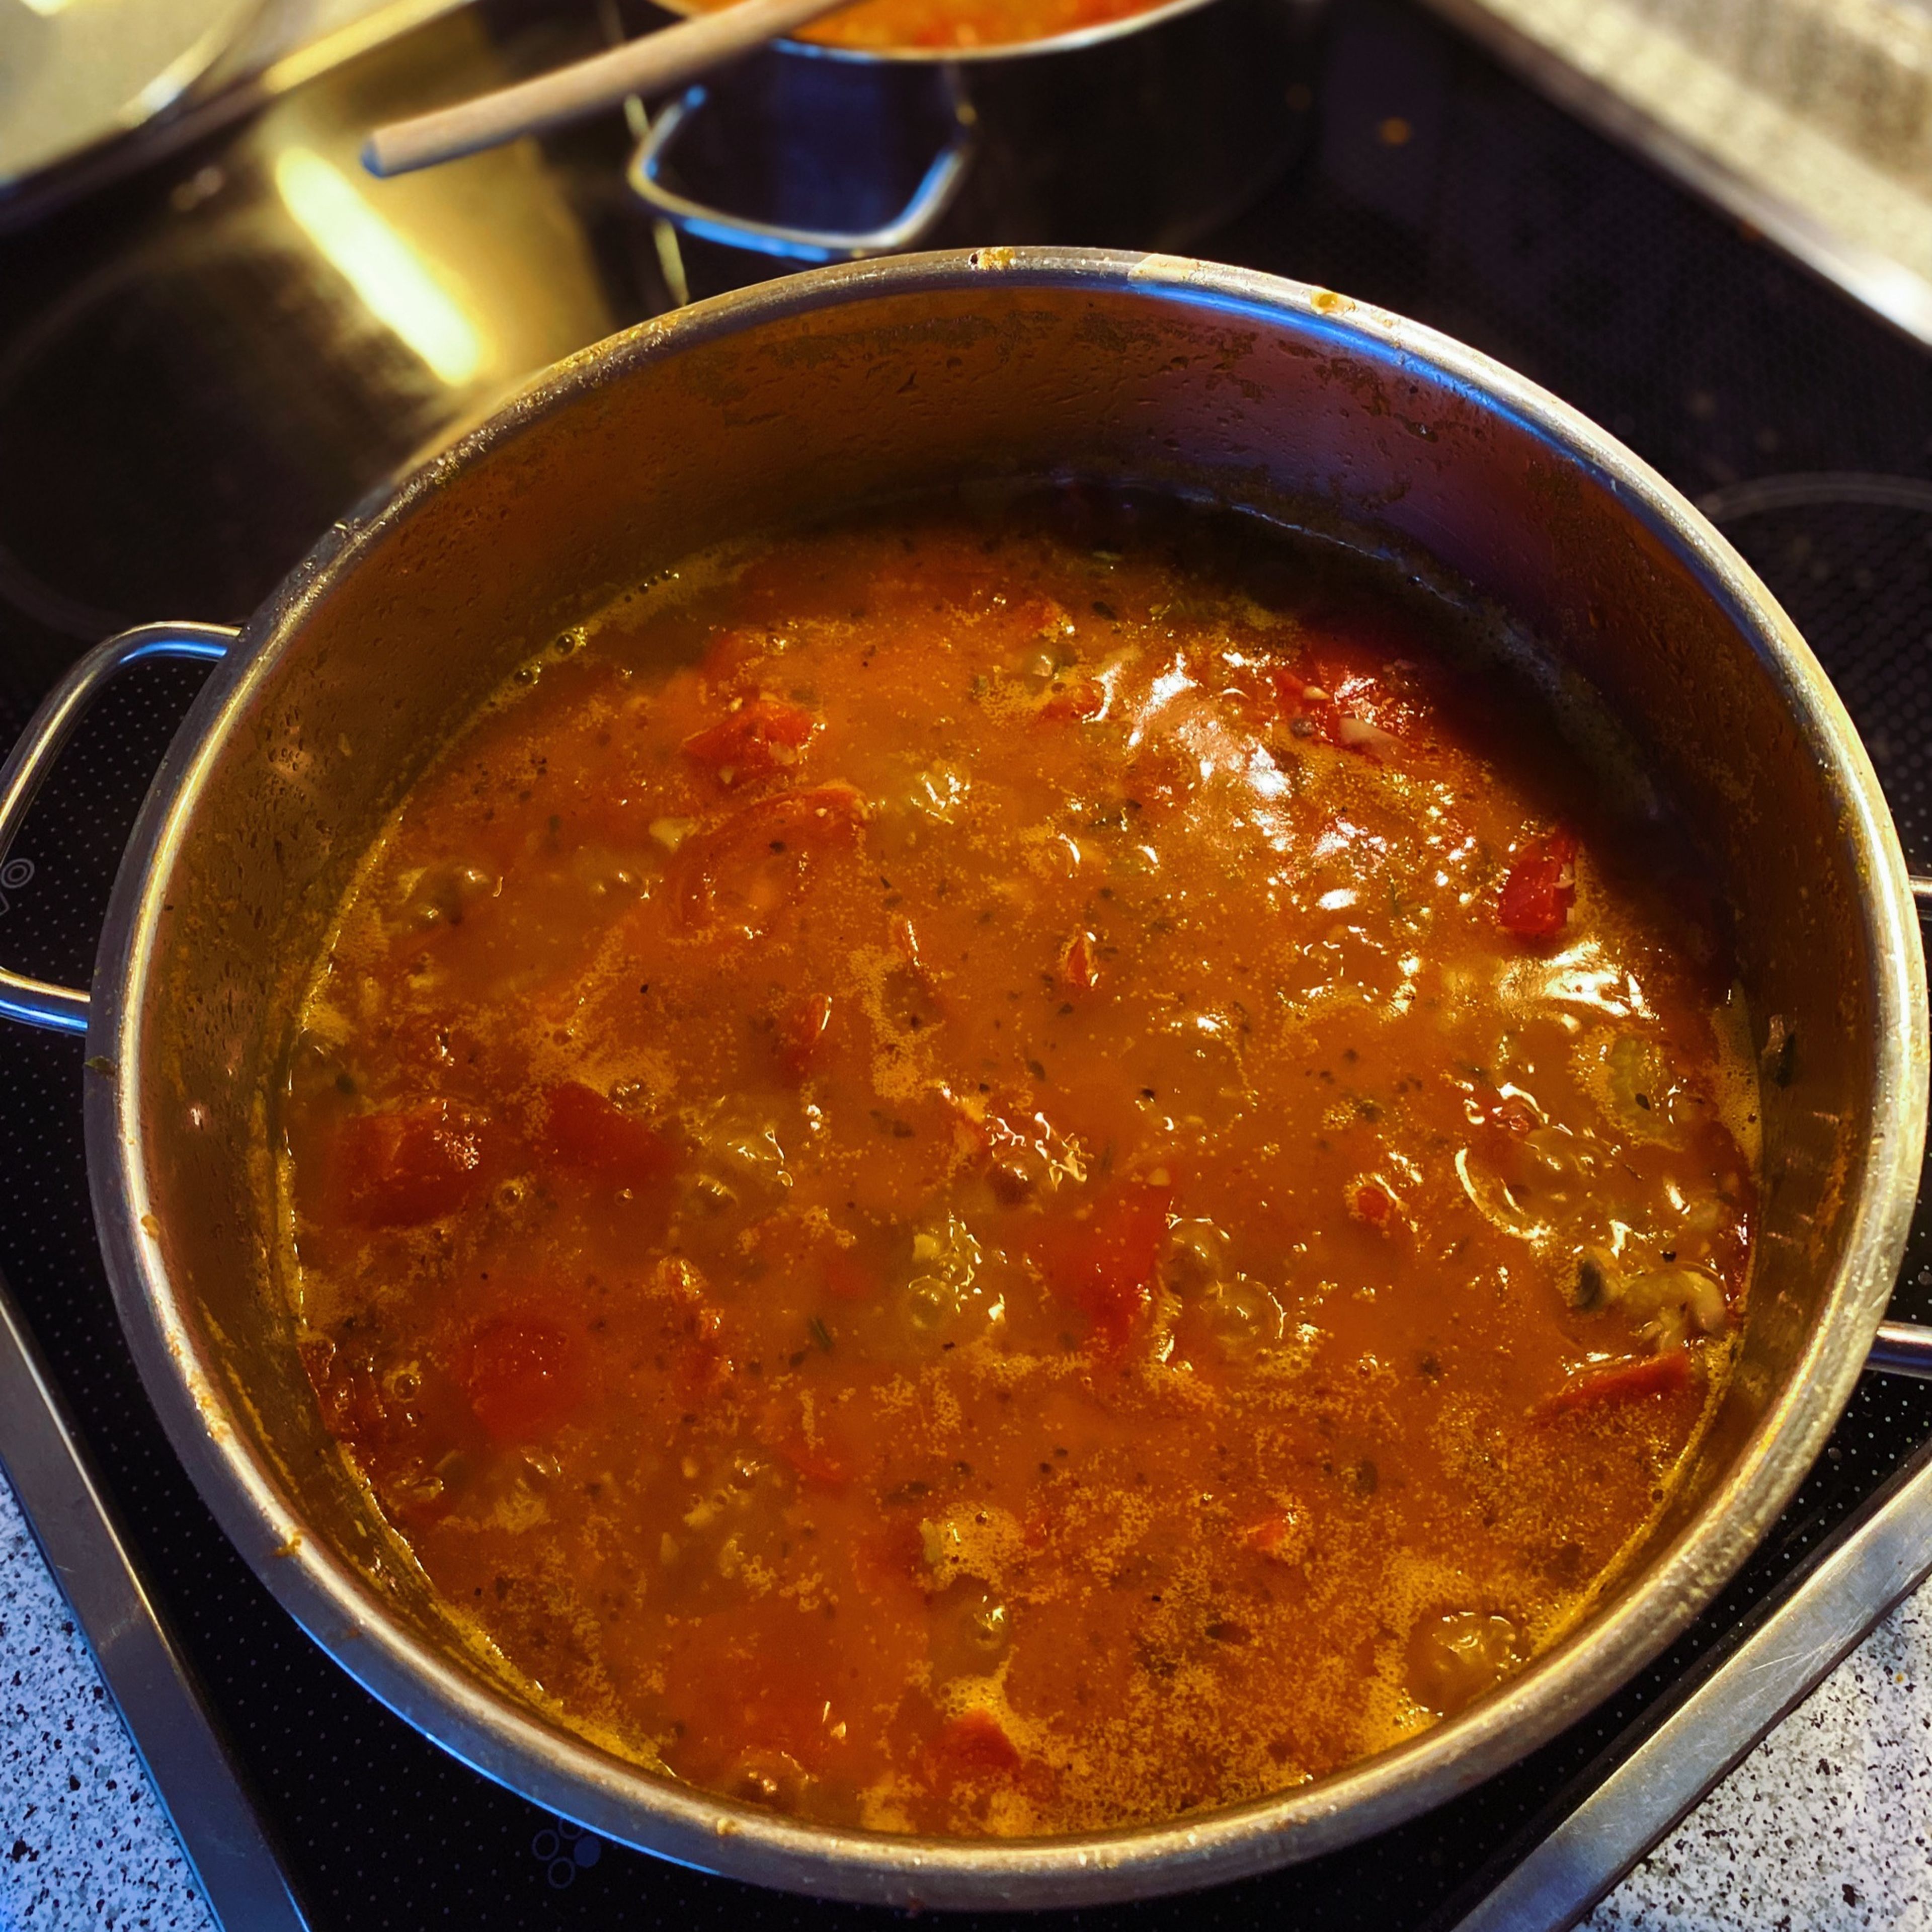 Die Tomaten und Kräuter hinzufügen. Das Sugo bei mittlerer Hitze 20min köcheln lassen, bis die Tomaten weich sind. Die Lorbeerblätter entfernen und alles passieren. Das Sugo mit Salz und Pfeffer würzen.